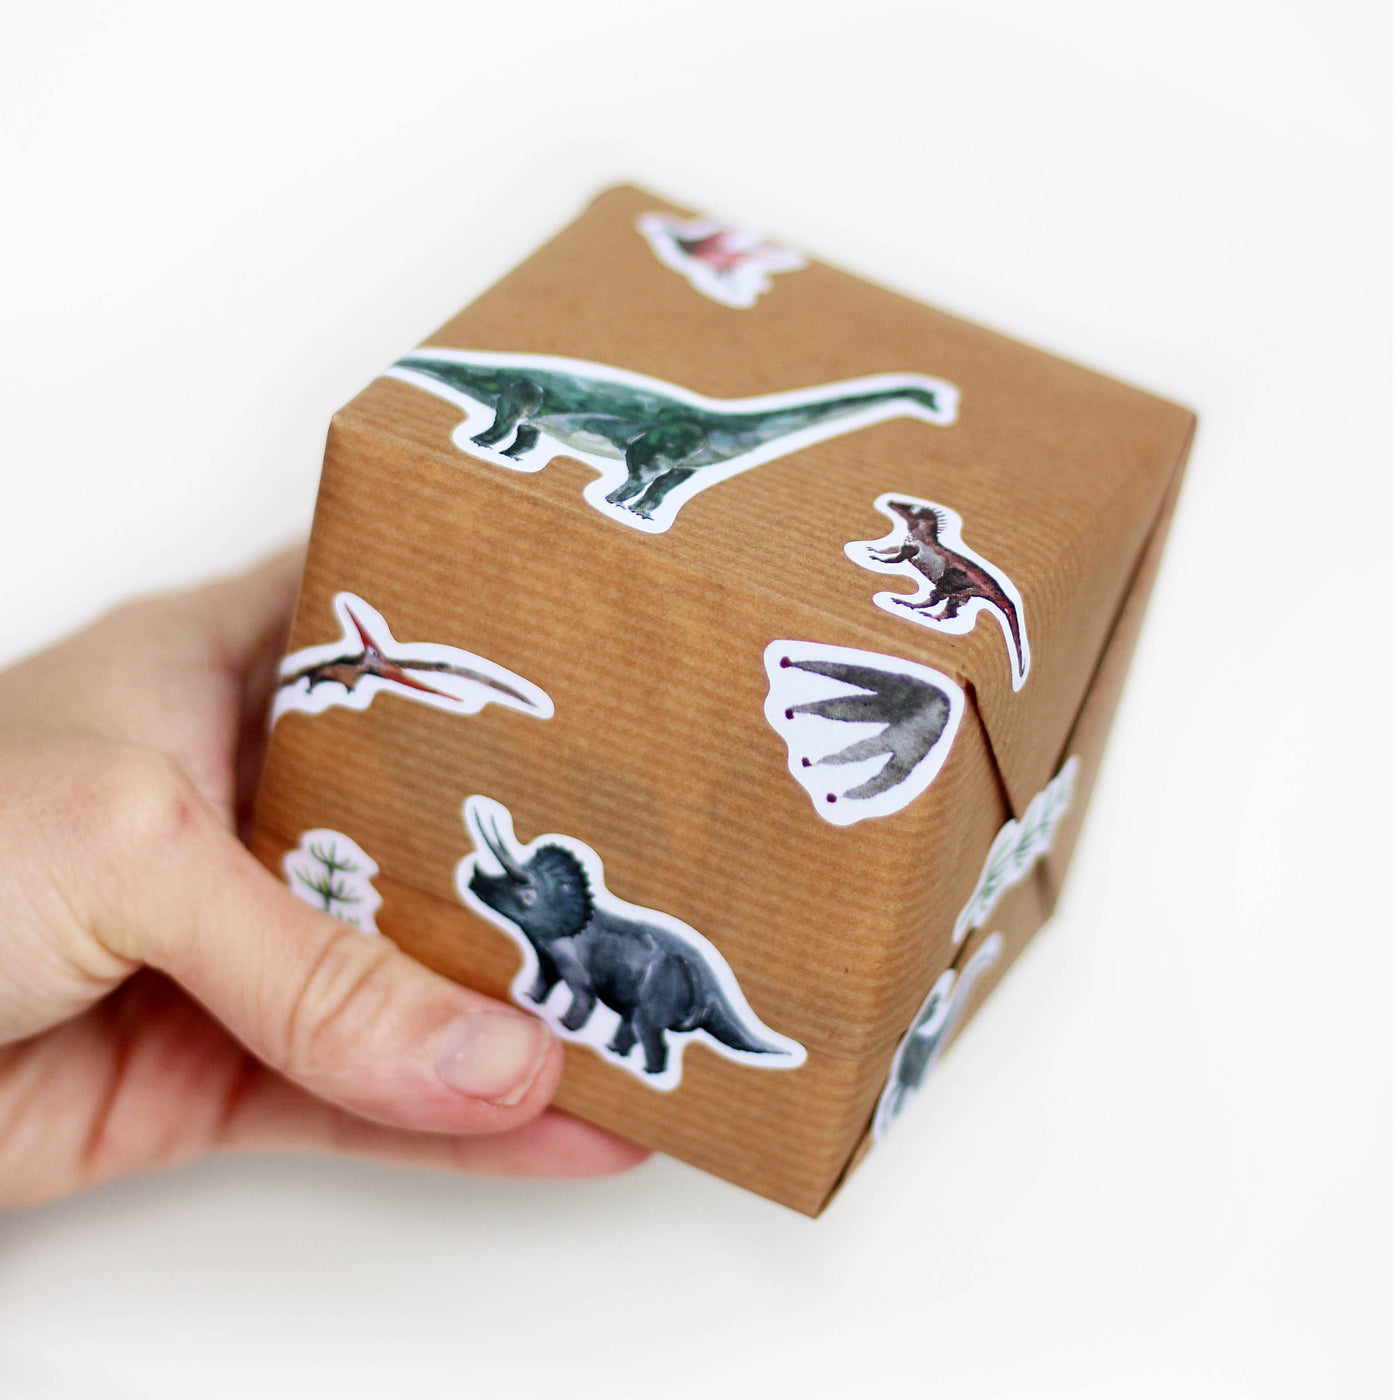 Geschenk eingepackt in braunem papier beklebt mit Dino stickern